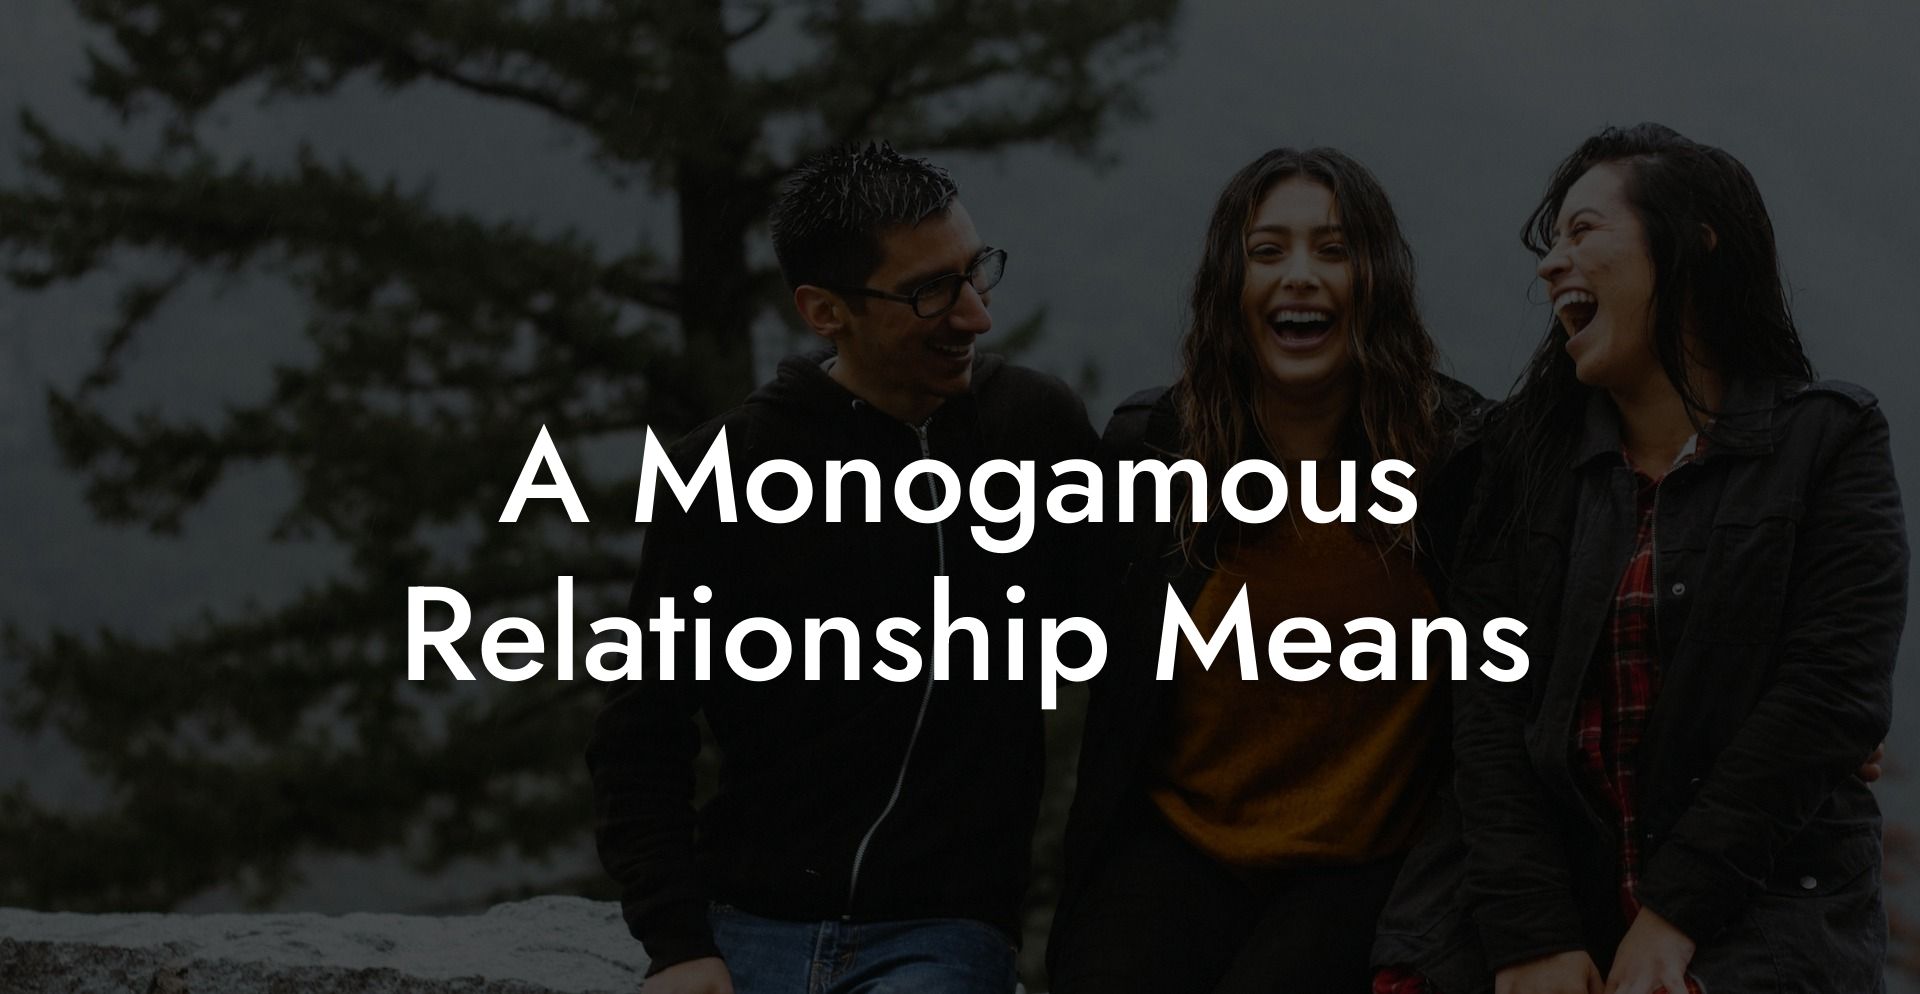 A Monogamous Relationship Means